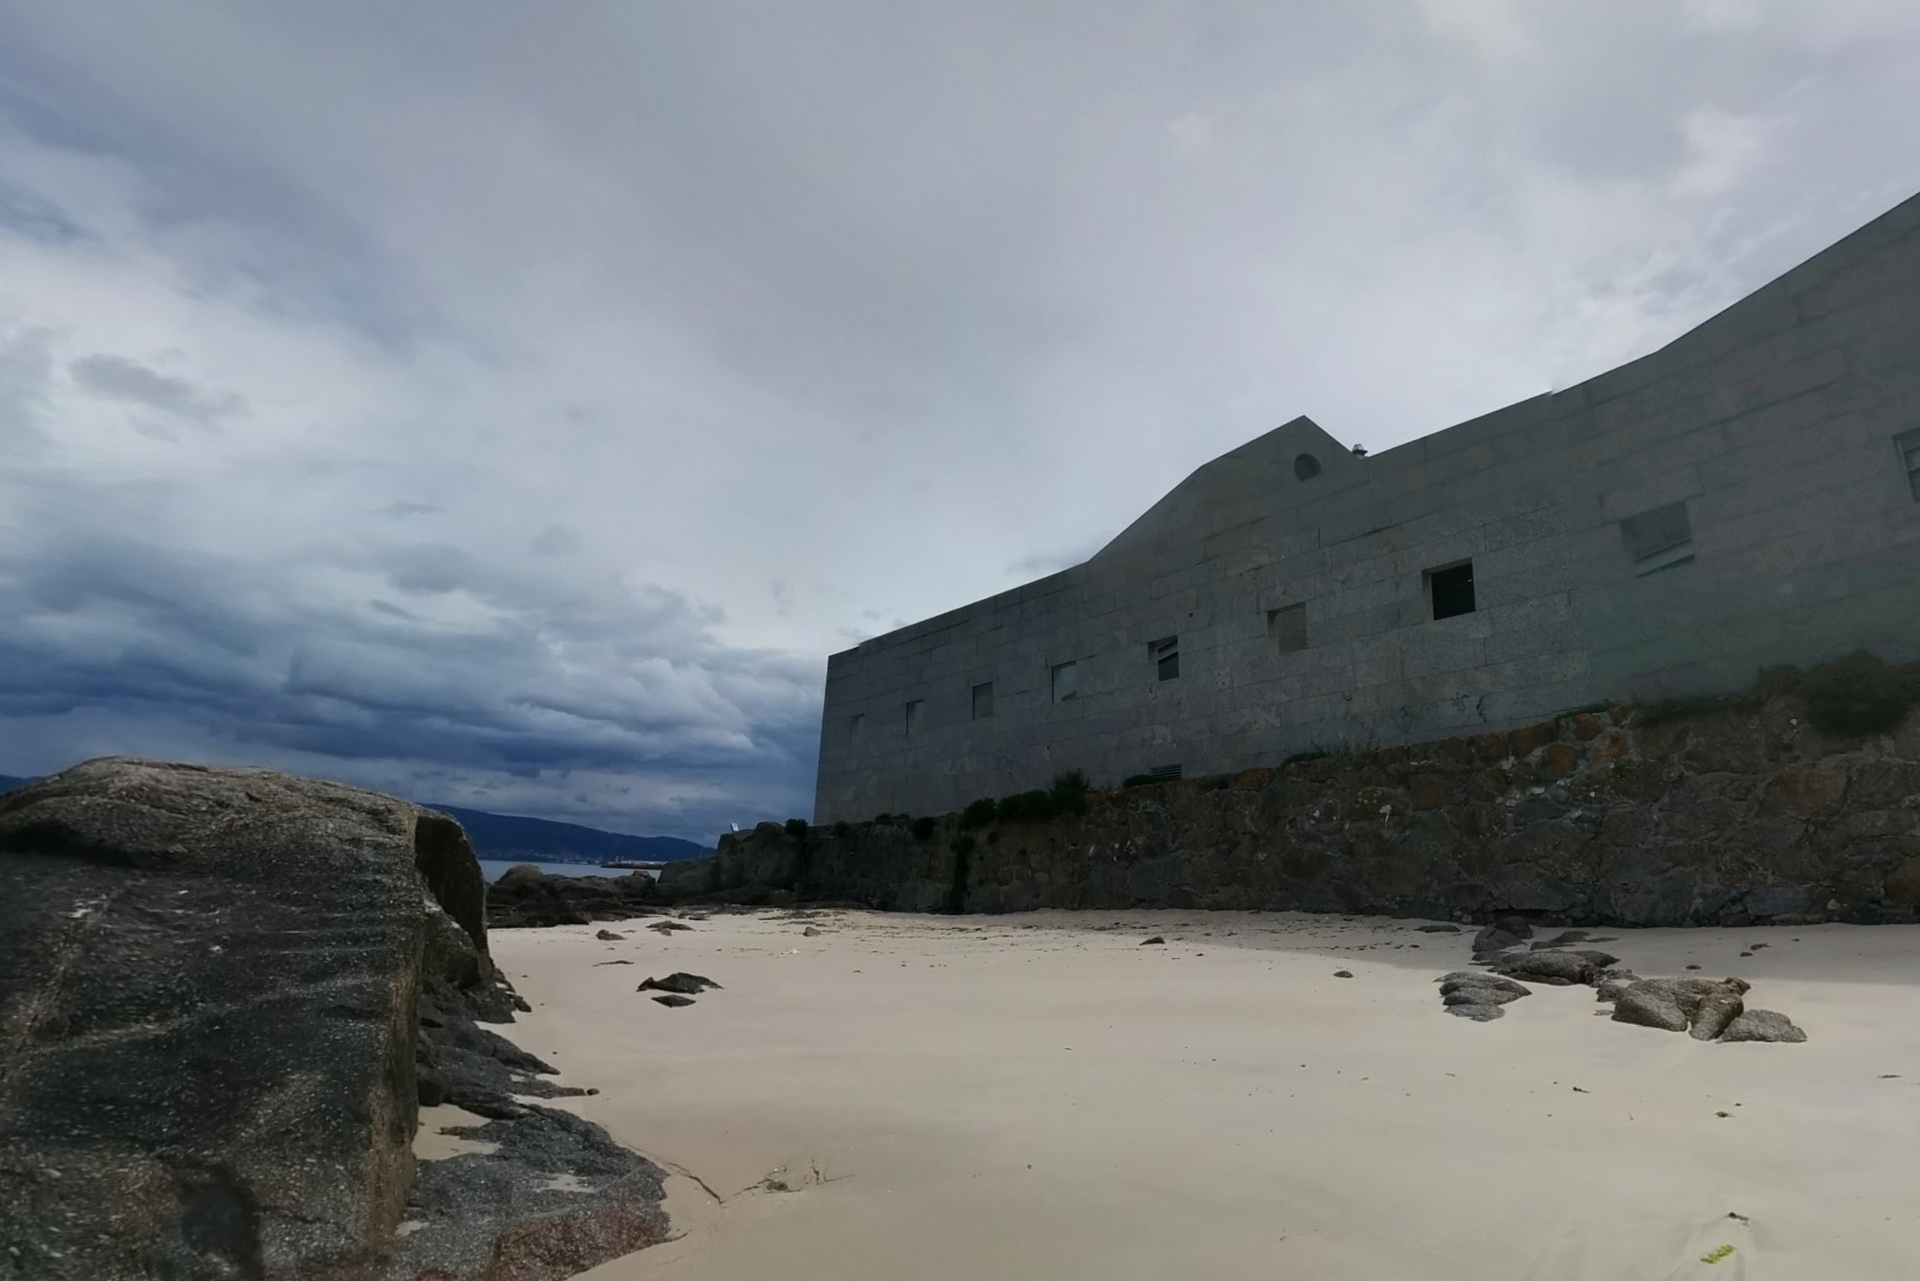 Museo do Mar de Galicia by Google Earth